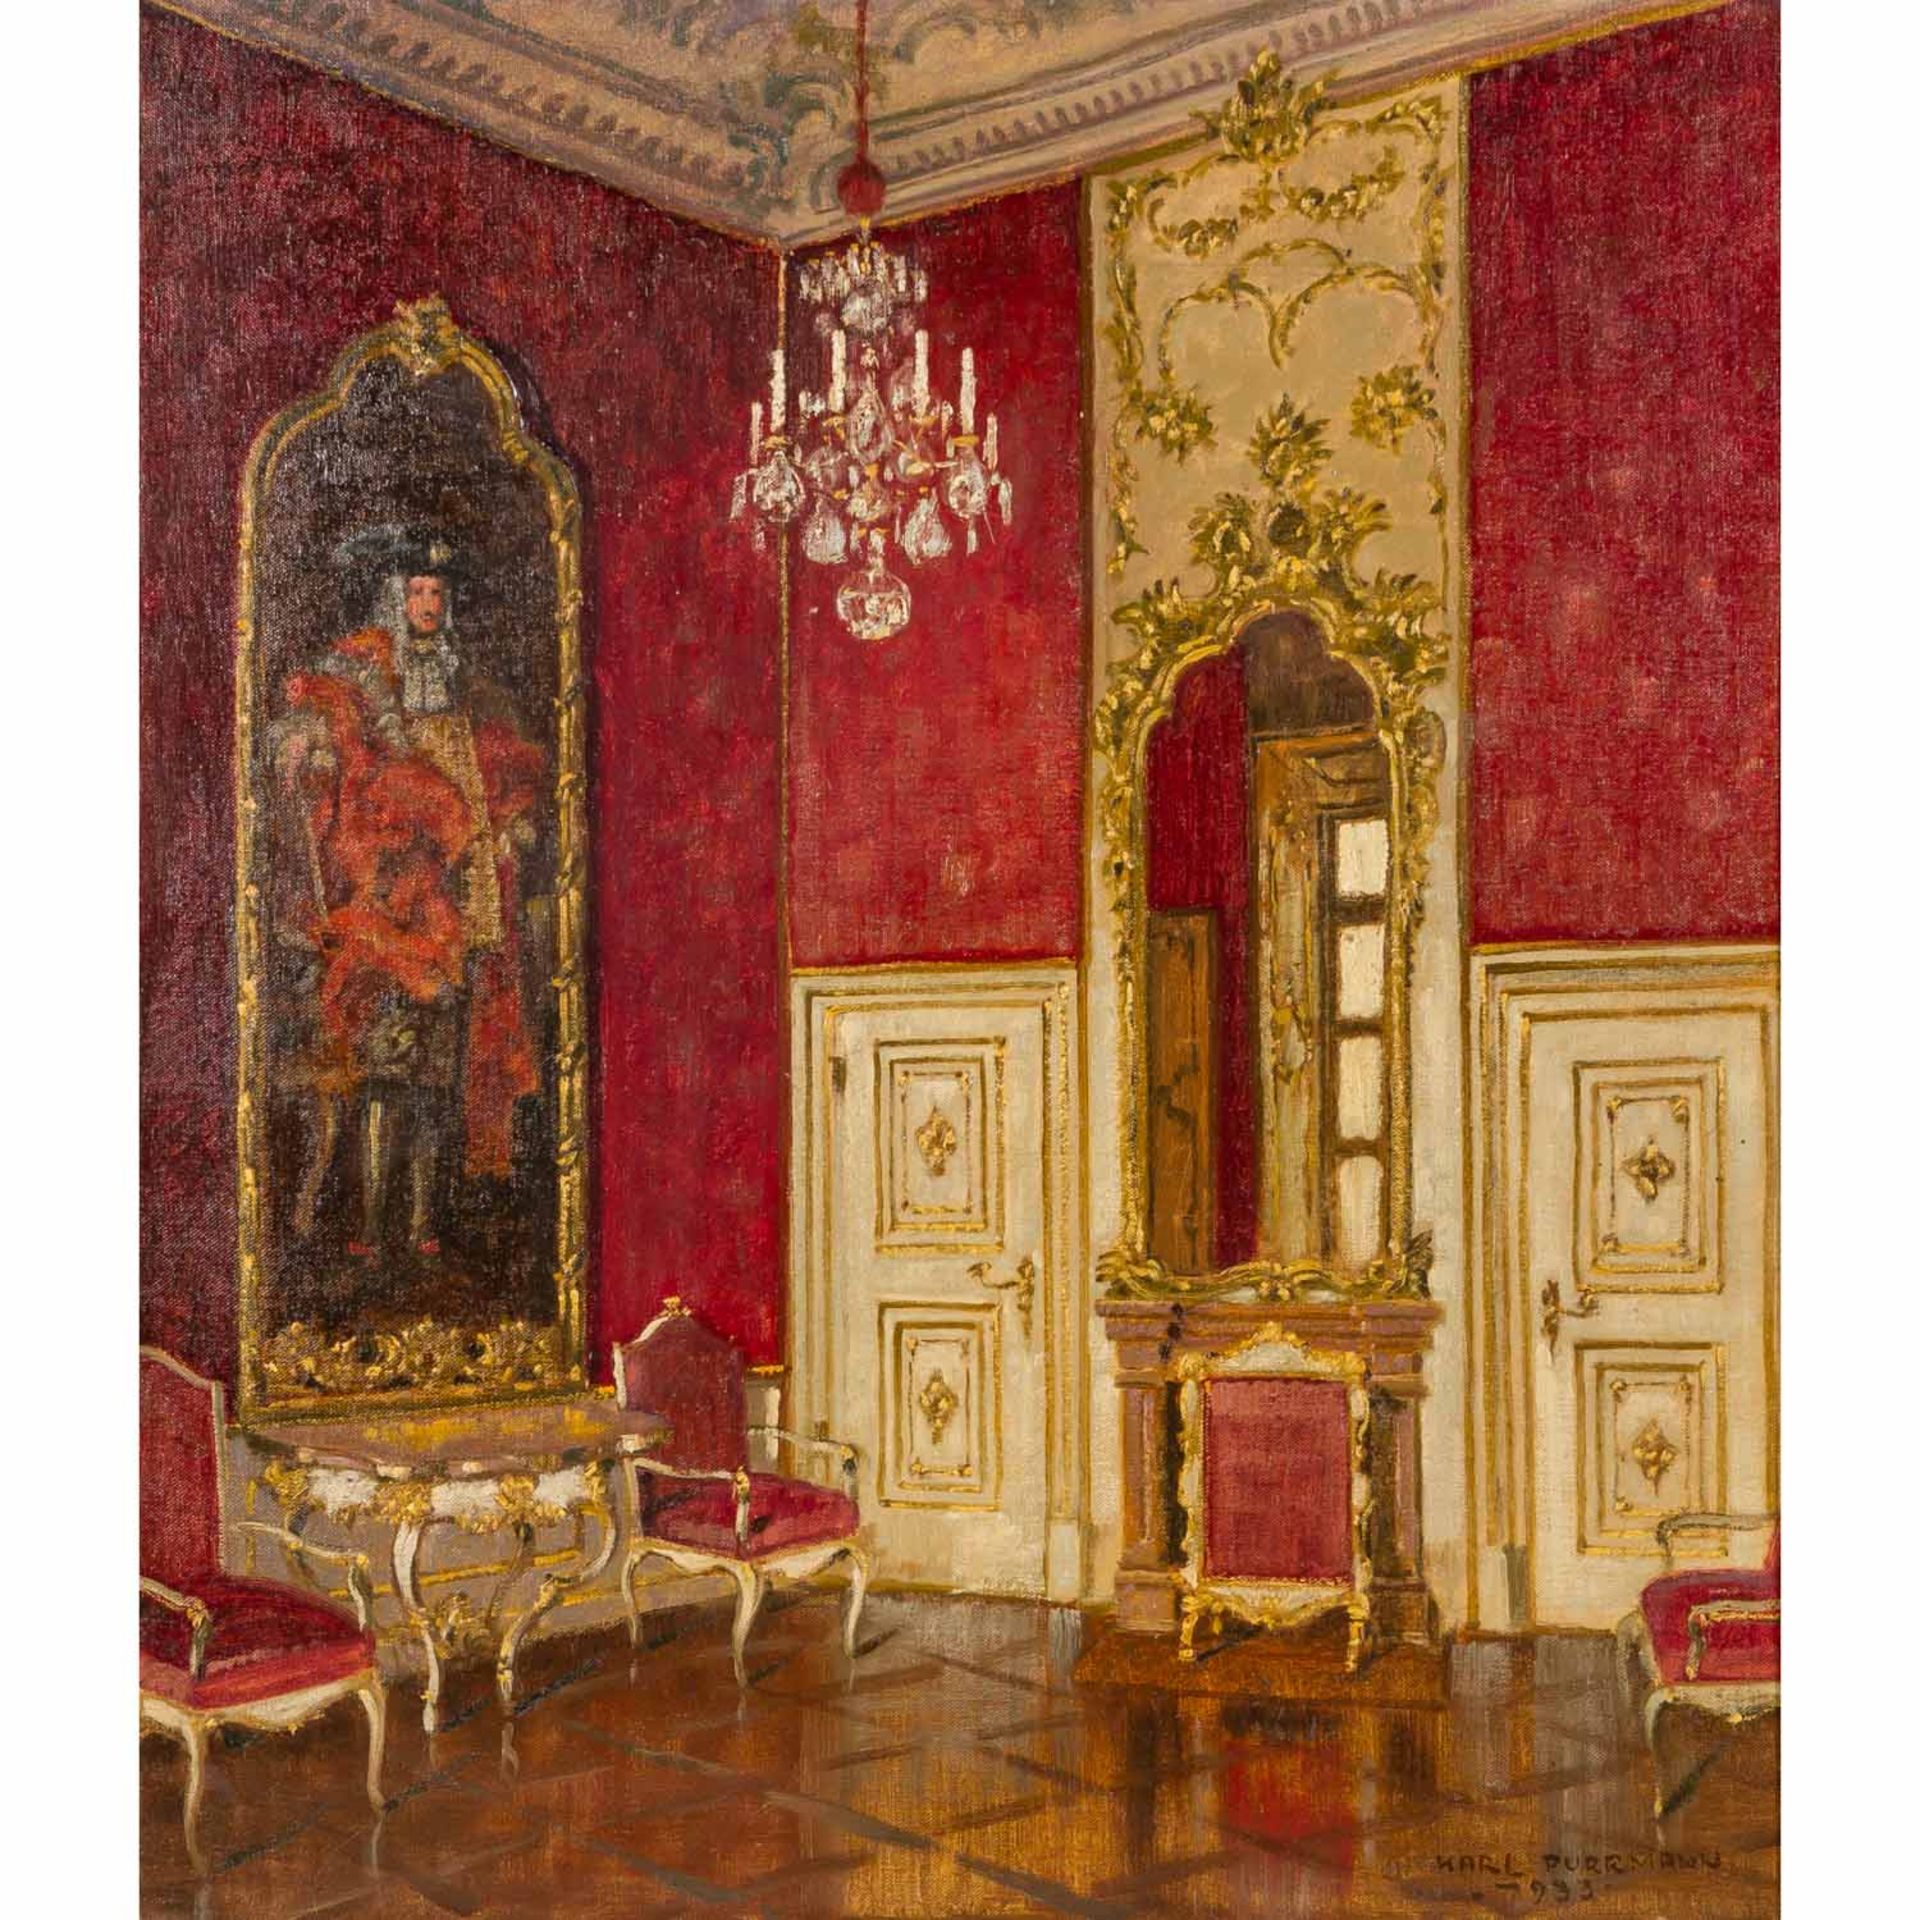 PURRMANN, KARL (1877-1966) "Salon eines Schlosses" 1933